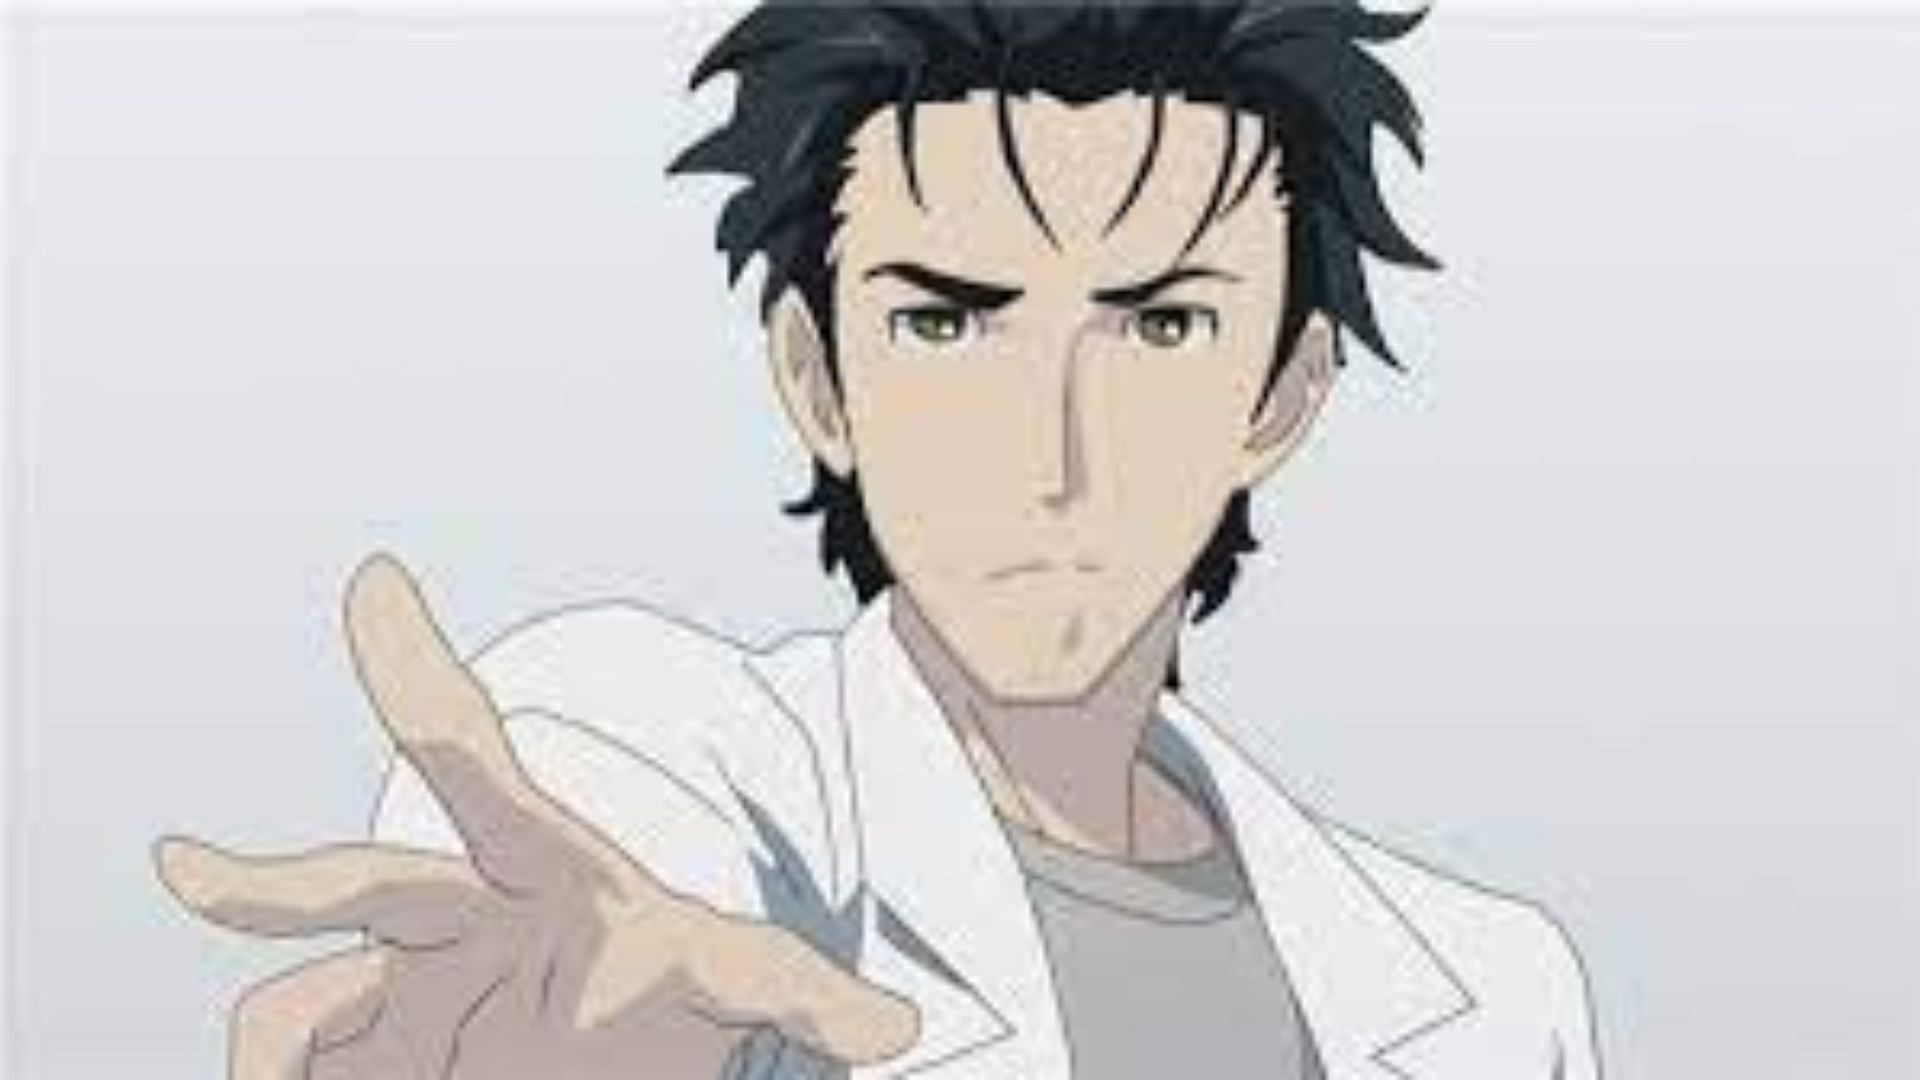 Rintarou Okabe as shown in anime(Image via Studio White Fox)